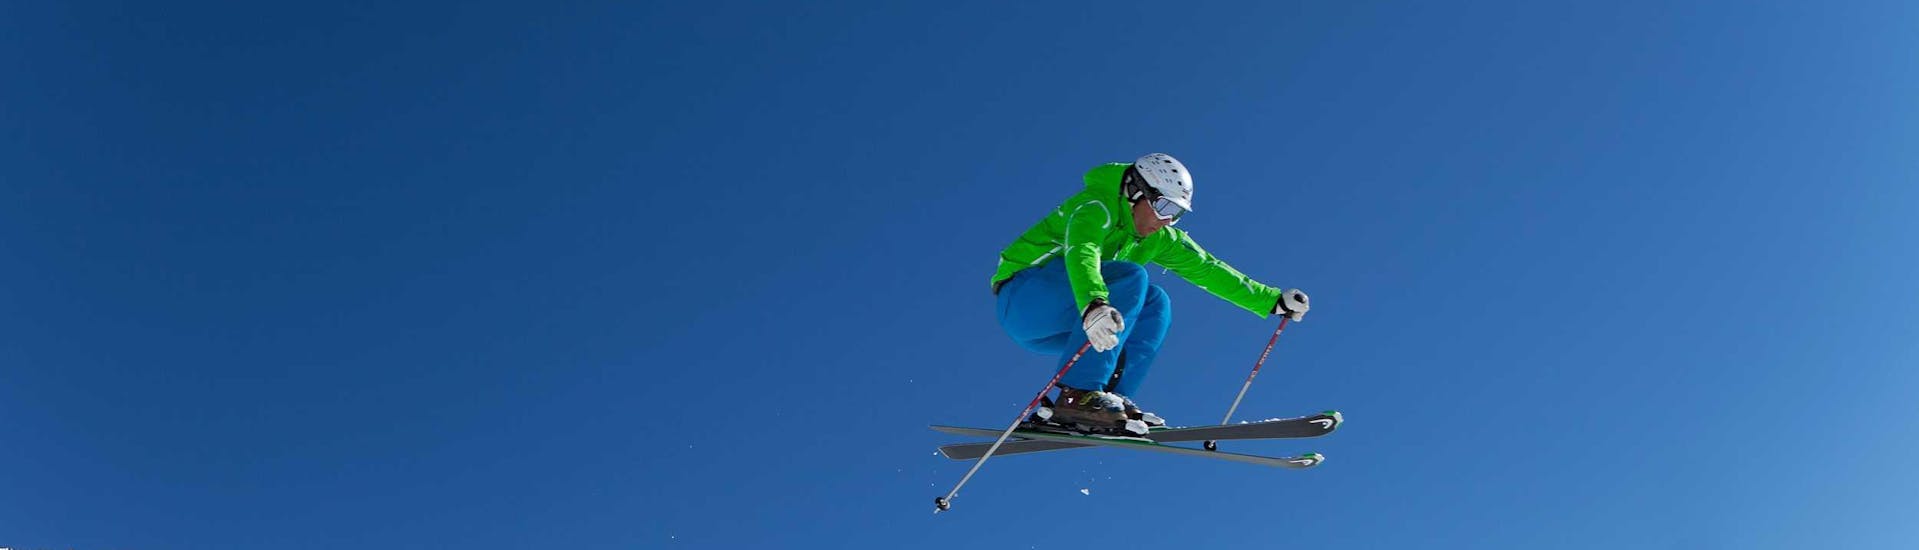 Ein fortgeschrittener Skifahrer springt durch die Lüfte mit Hilfe des privaten Skikurses für Erwachsene aller Levels beim Ski Dome Oberschneider in Kaprun.